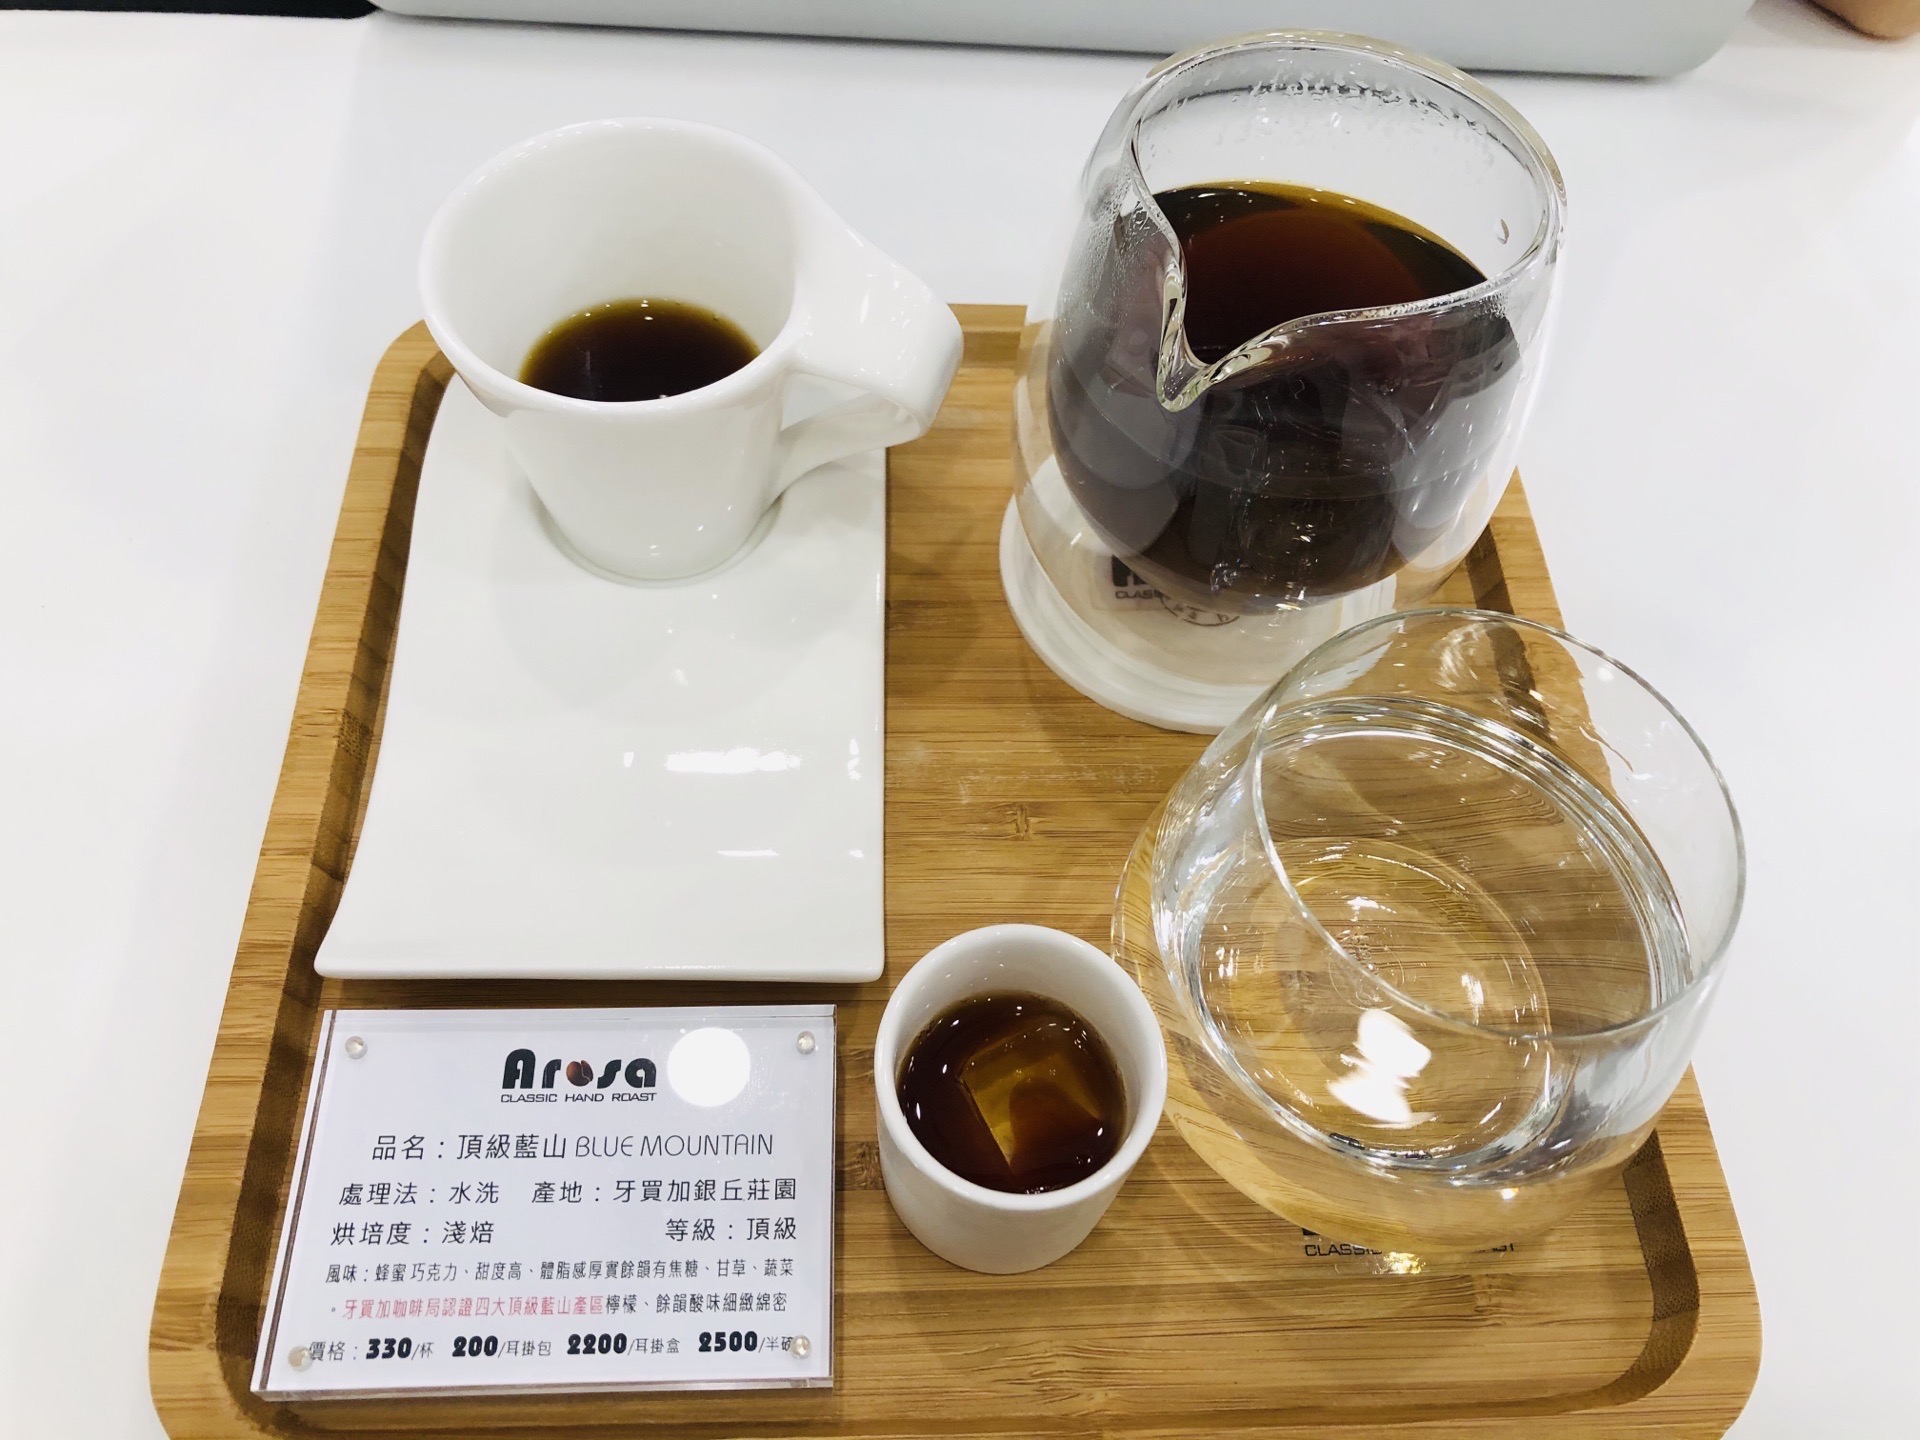 終於喝到傳說中的頂級咖啡-藍山咖啡，雖然一杯要價新台幣330元，但真的好喝，入口是淡淡的巧克力香氣，